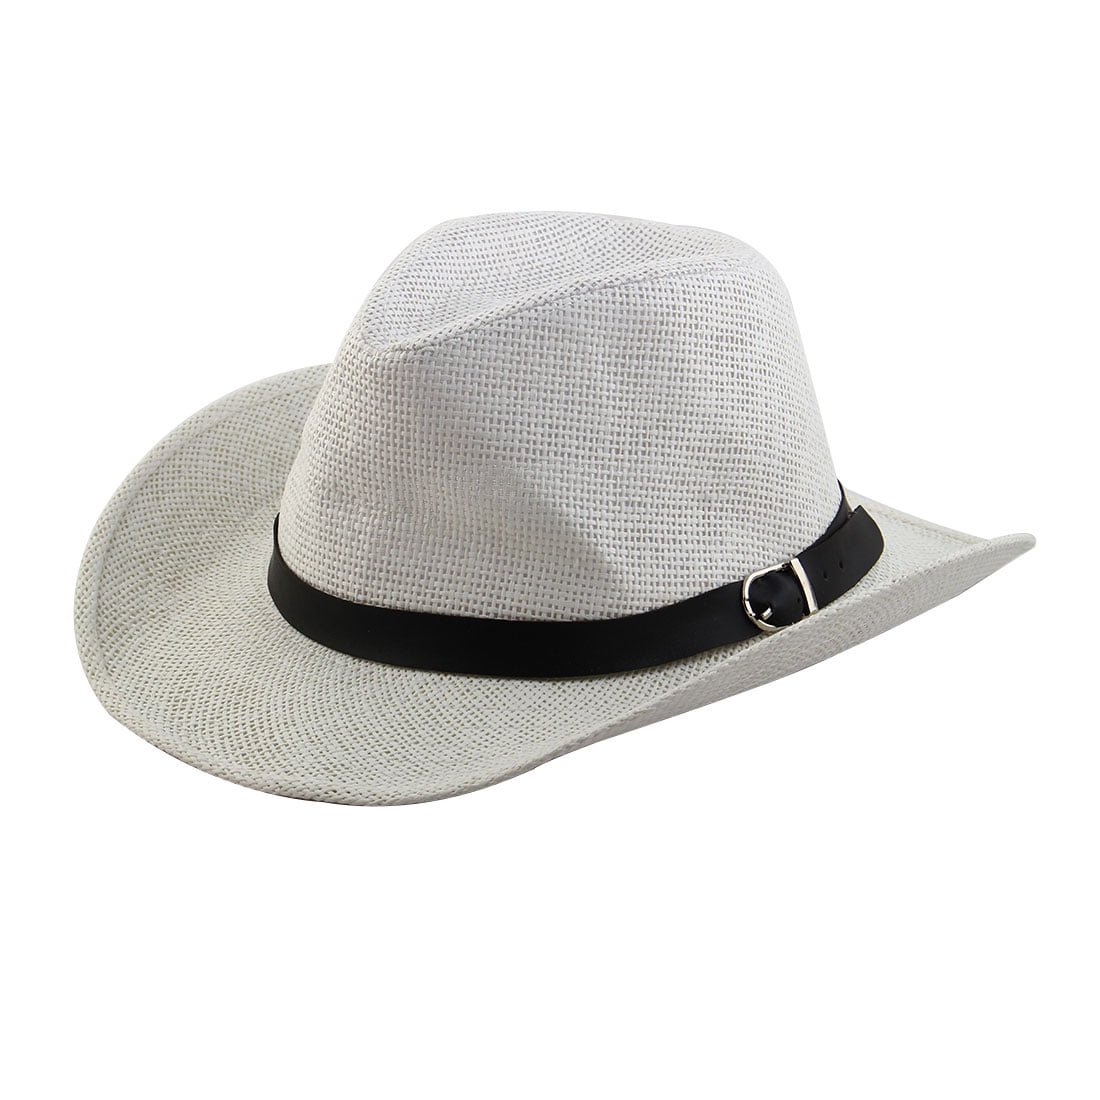 WHOLESALE   fedora Cowboy Faux leather hats 40  PCS £2.50  EACH 